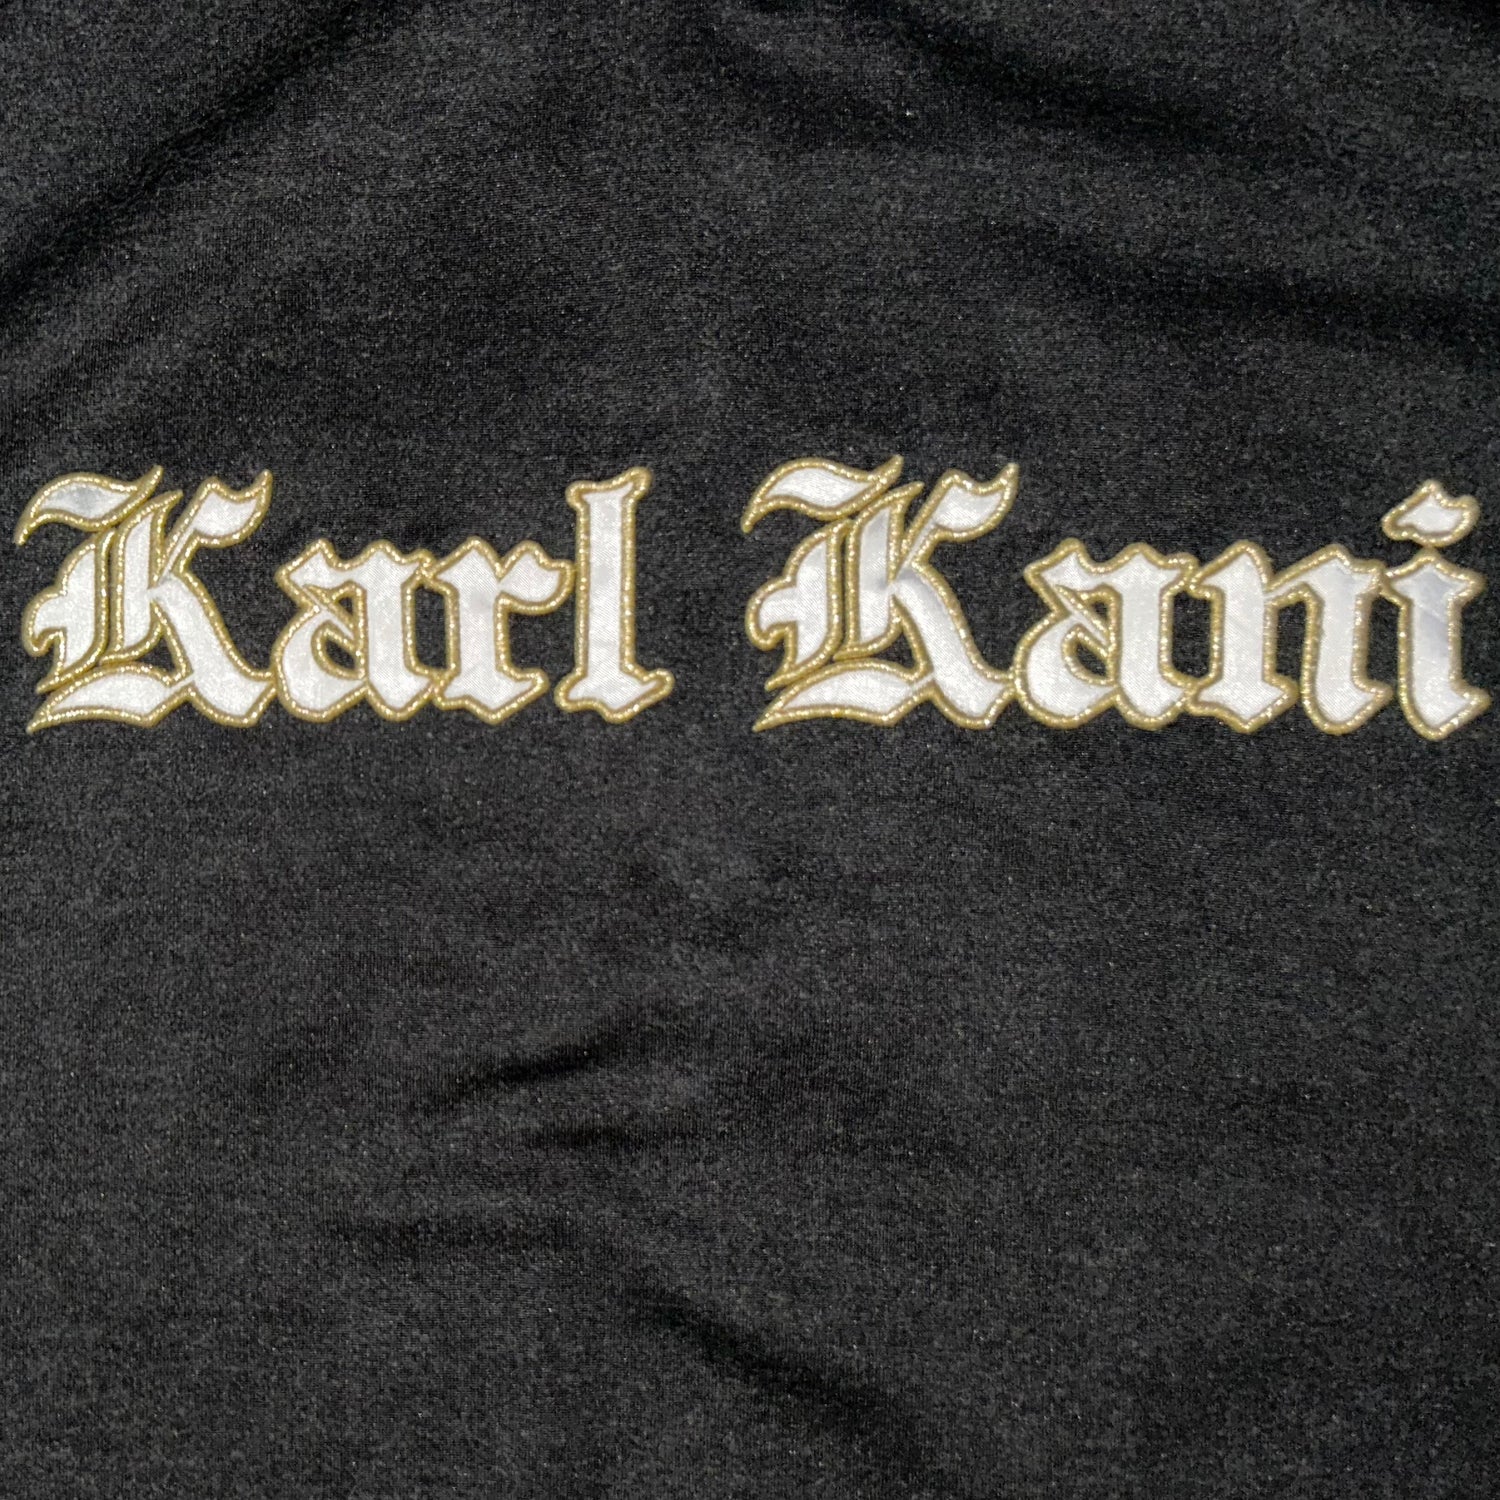 KARL KANI Long Beach Vintage Jersey (XL)